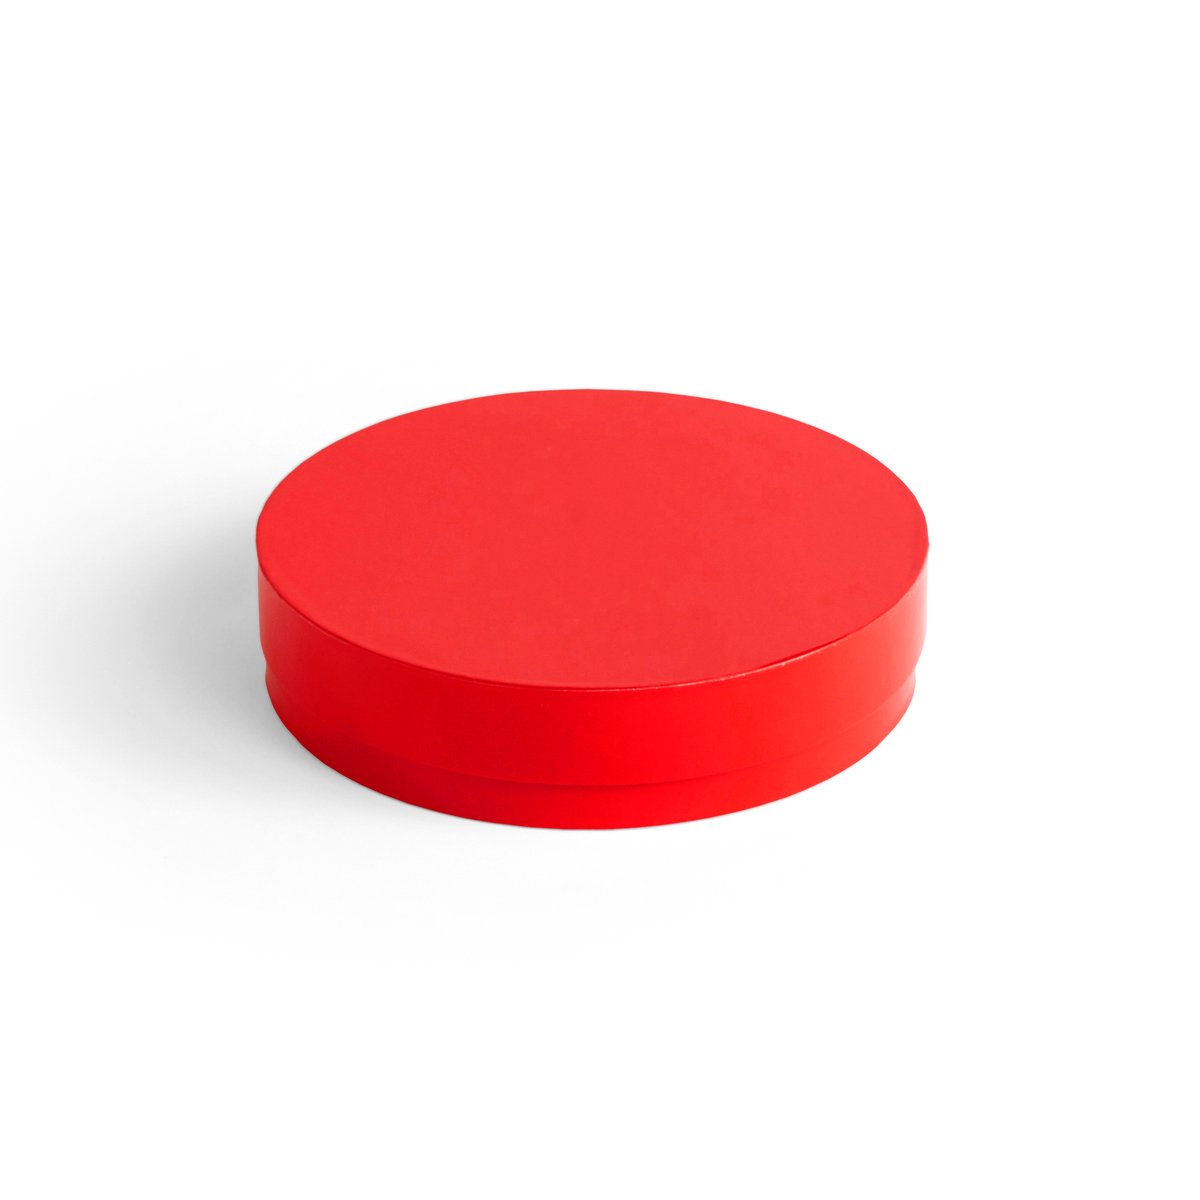 HAY Colour Storage Round kannellinen laatikko Ø 24 cm Vibrant red